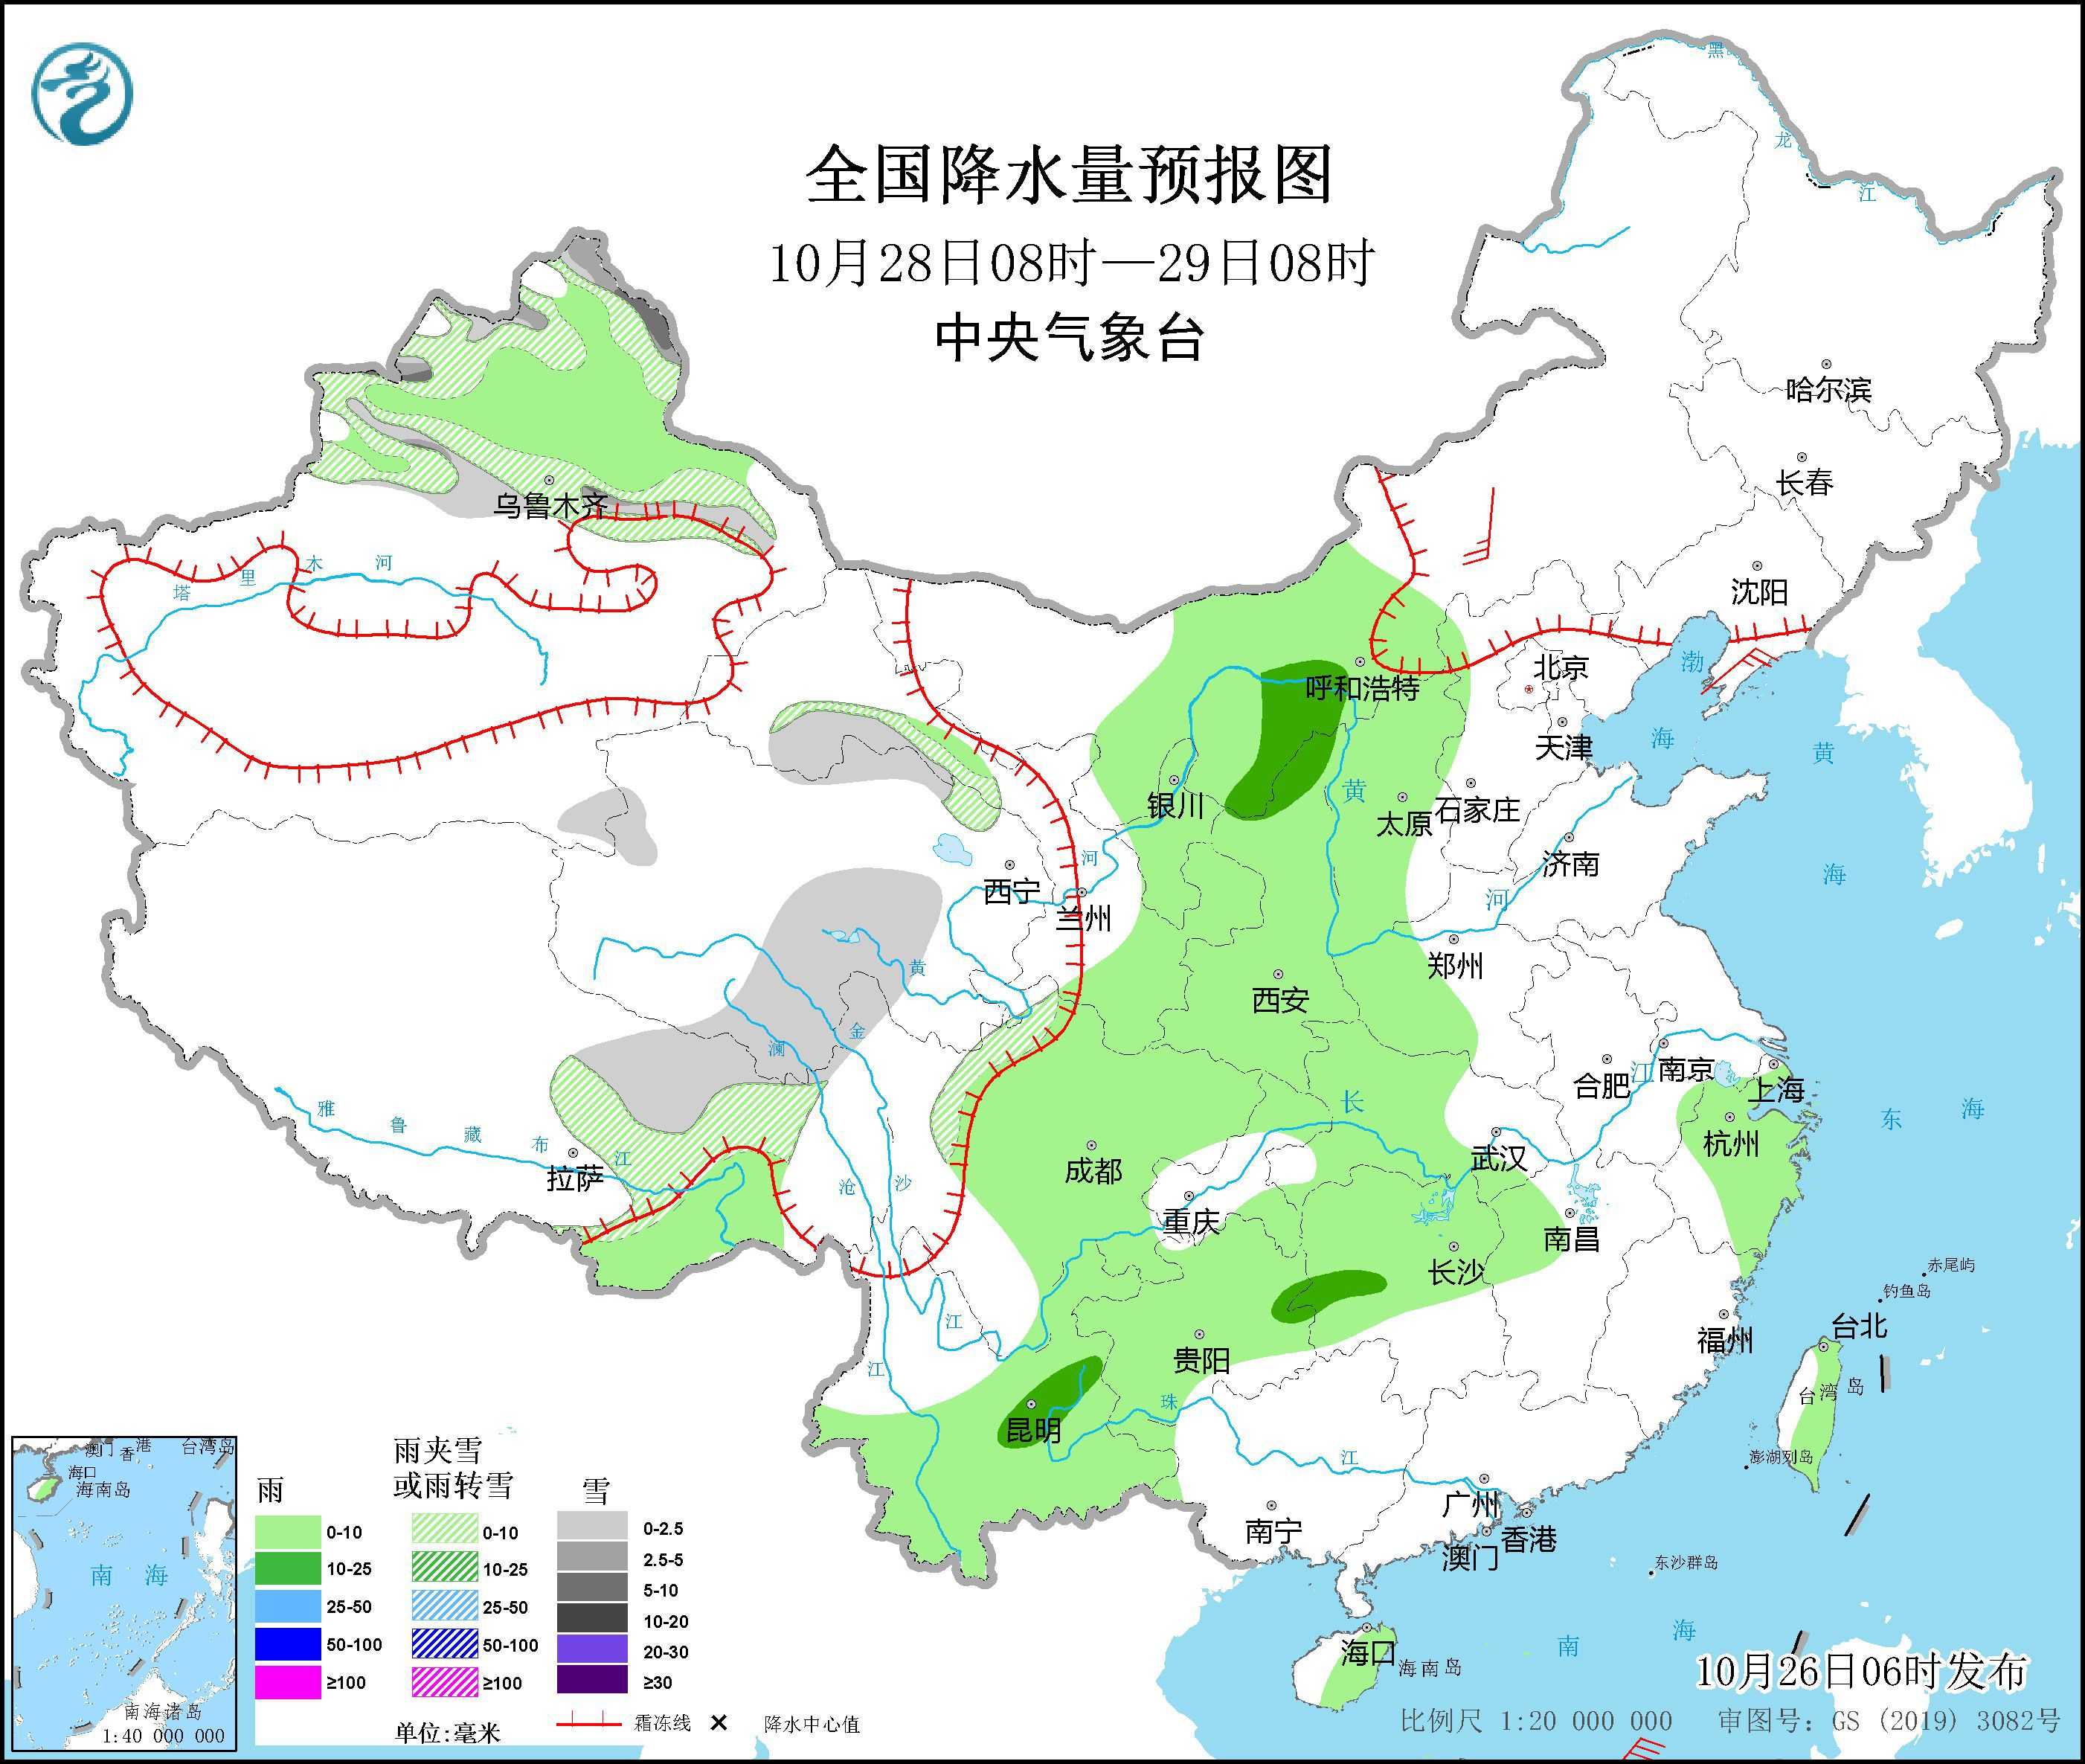 冷空气将影响东北华北 西南地区等地有阴雨天气